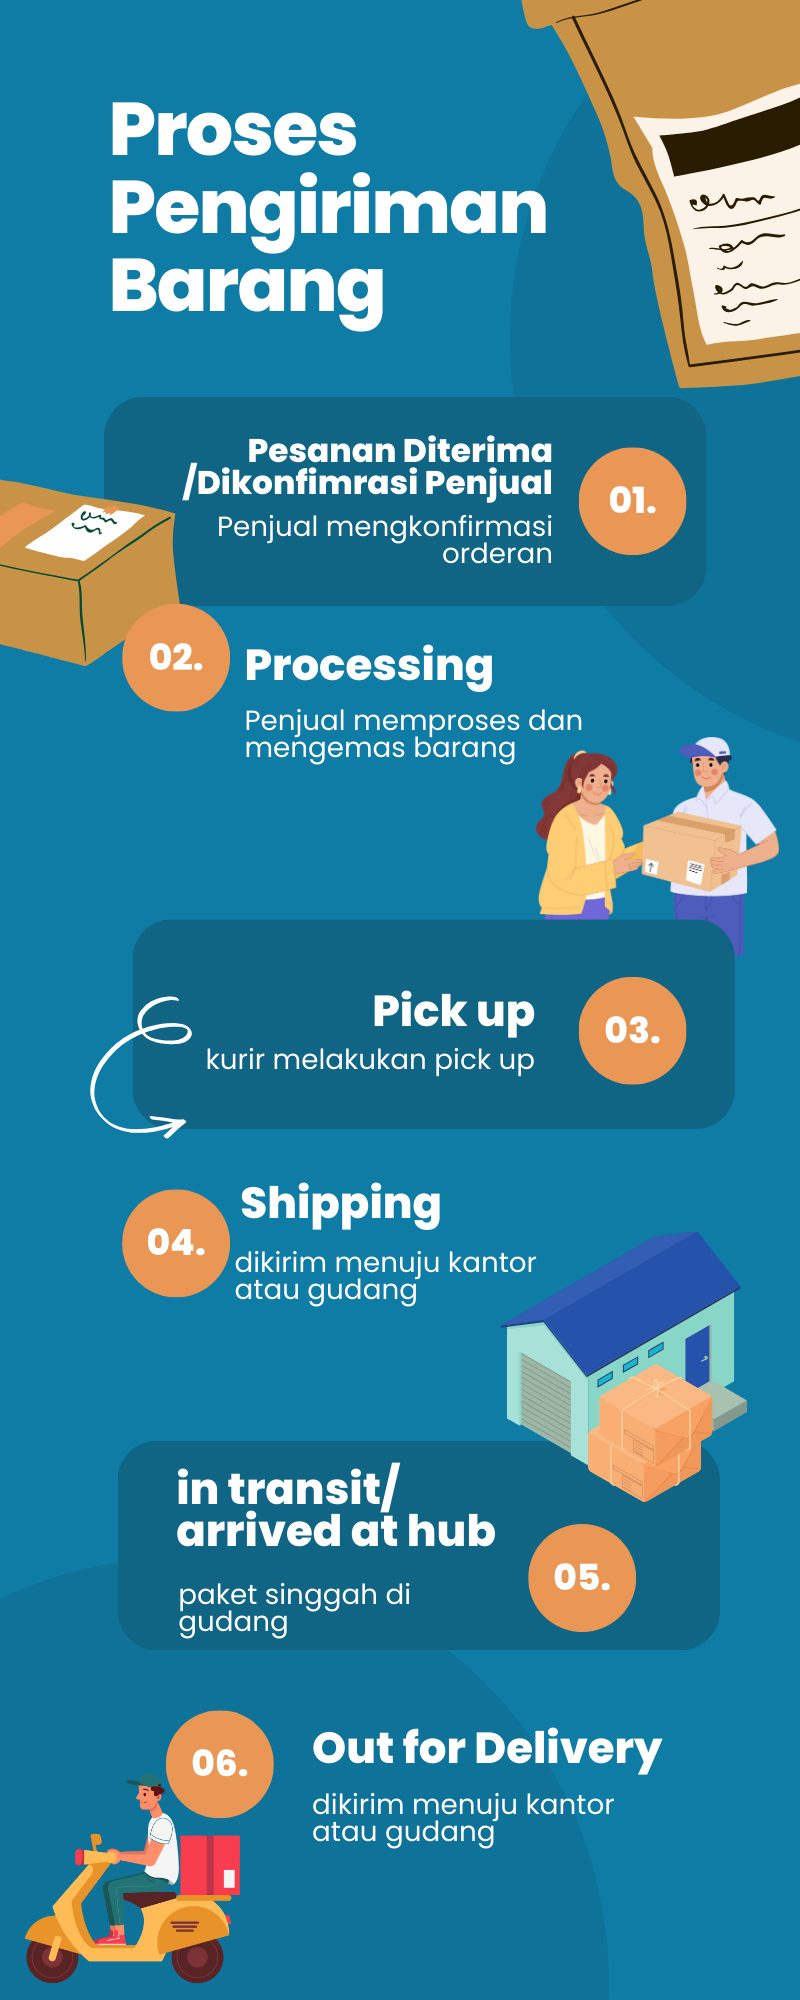 Infografis pluginongkir - proses pengiriman barang hingga status out for delivery